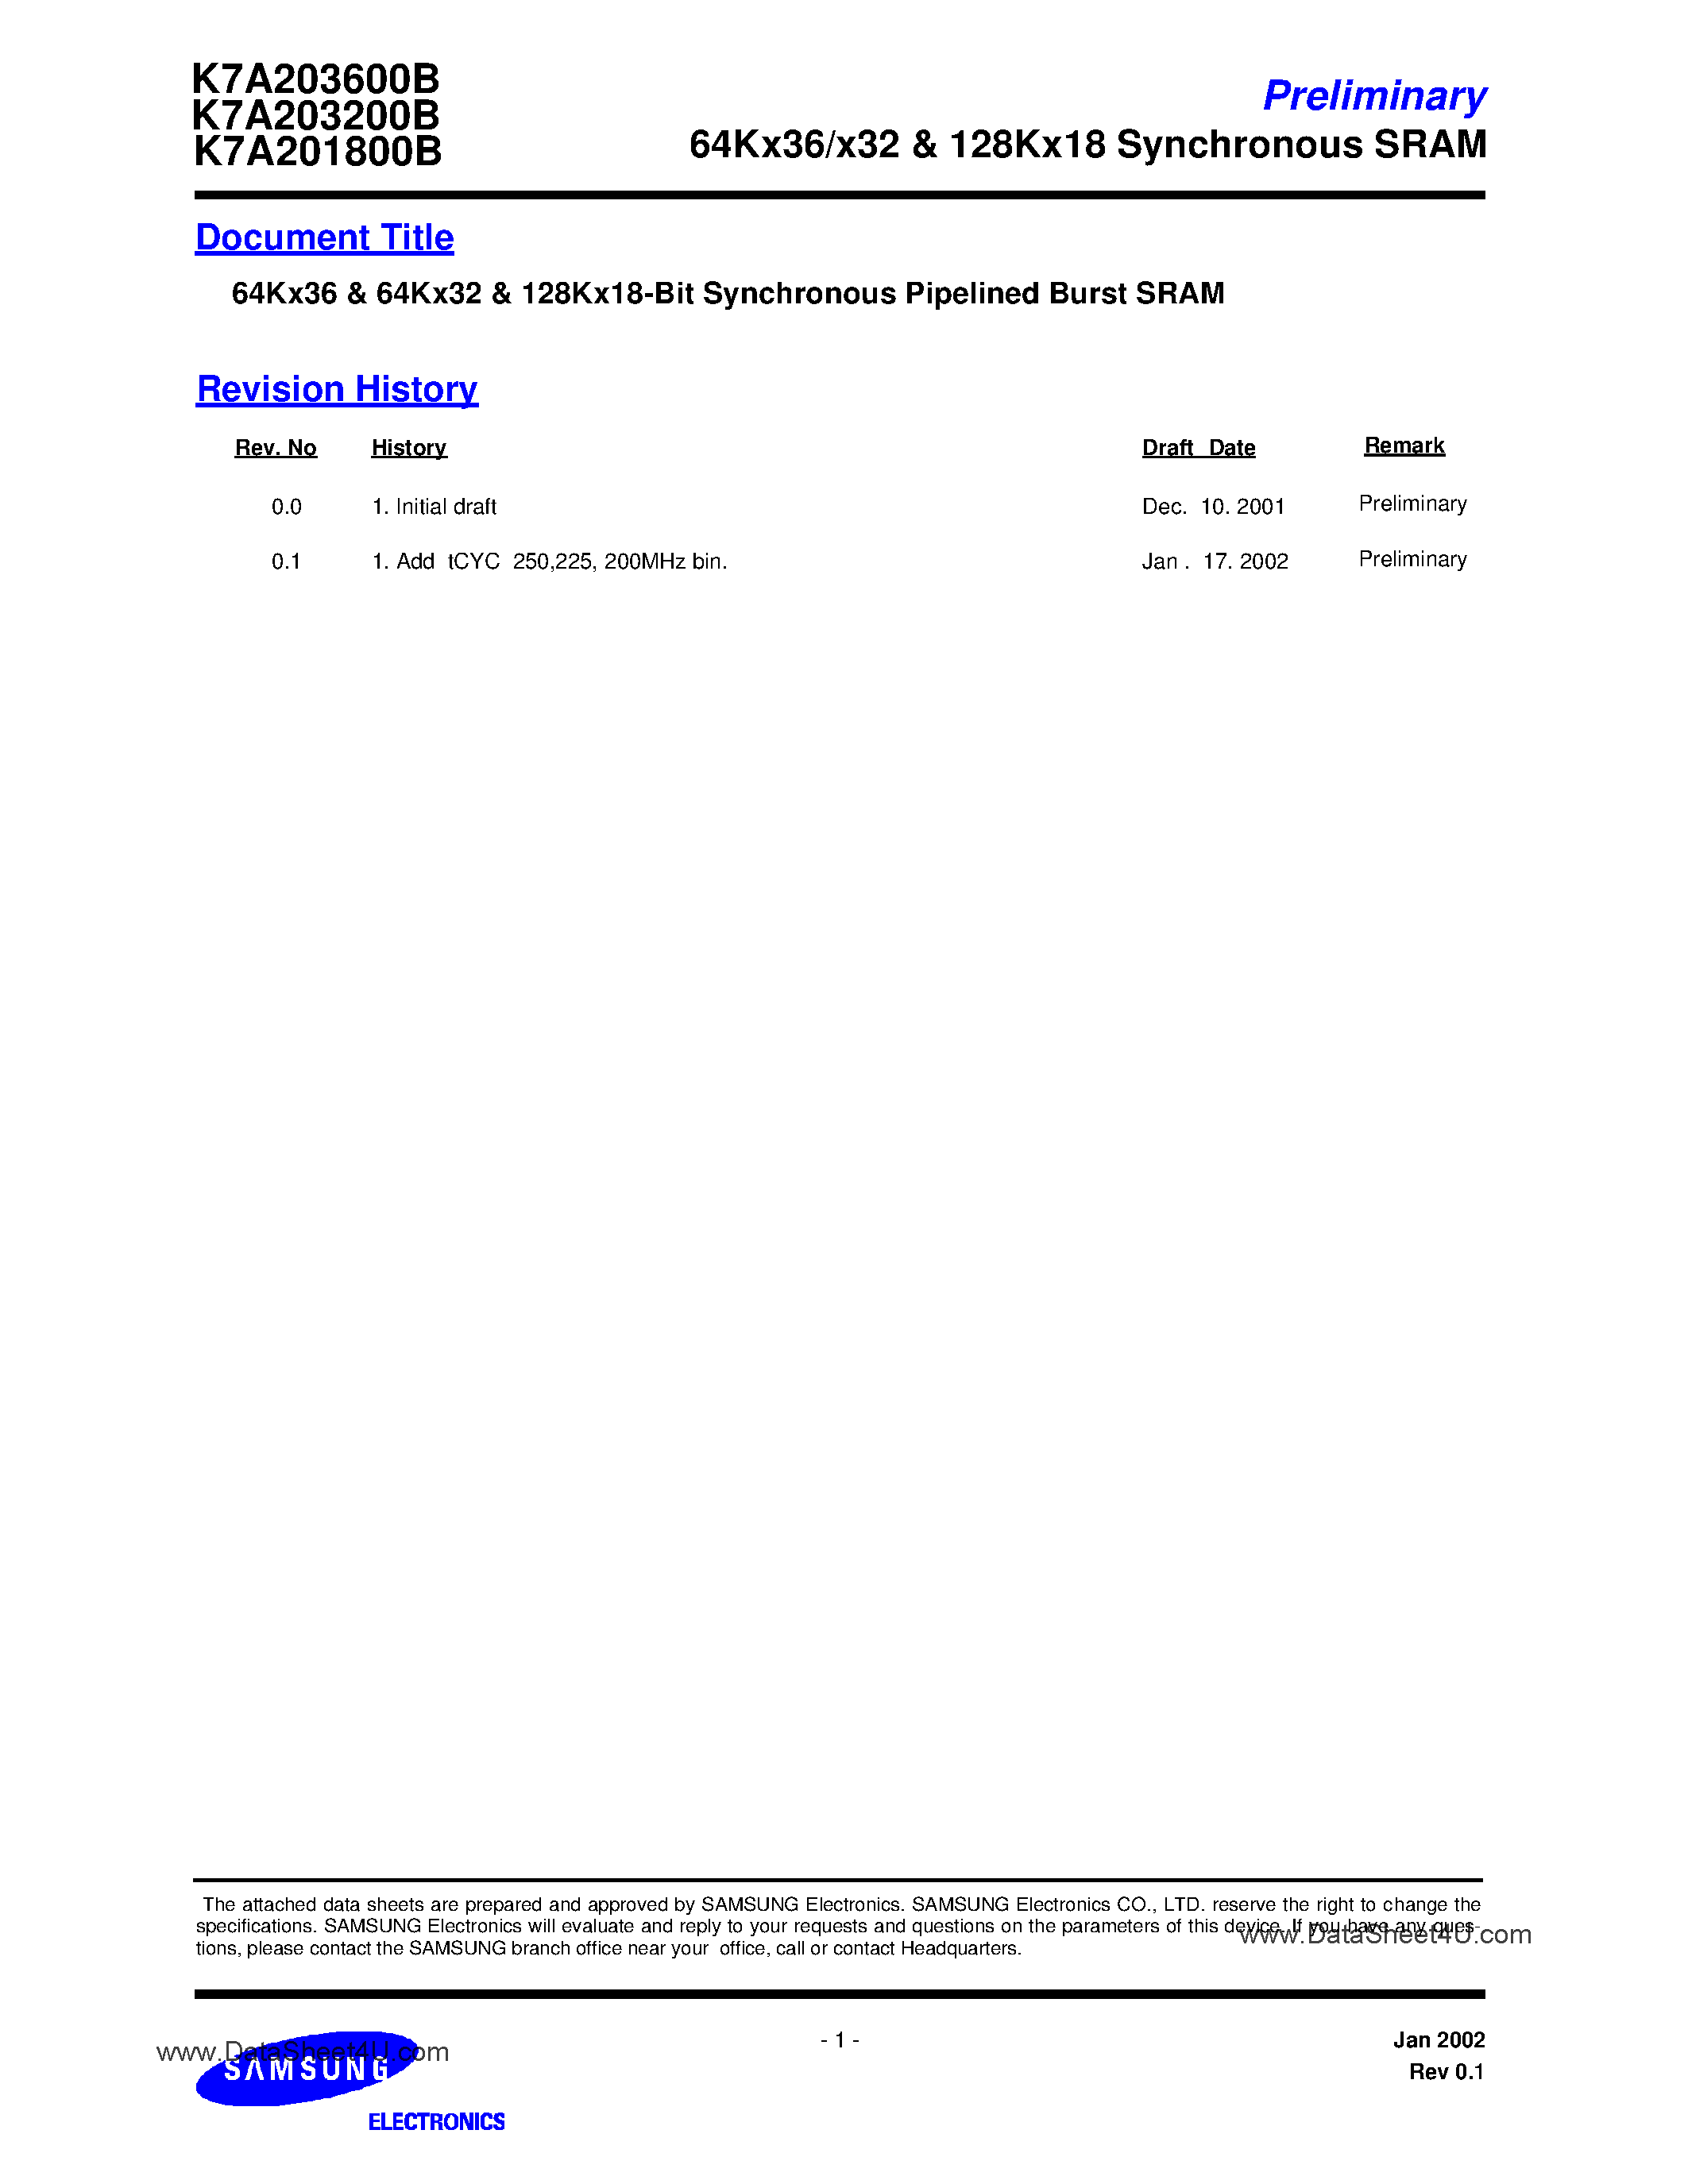 Даташит K7A203200B-QC(I)14 - 64Kx36 & 64Kx32-Bit Synchronous Pipelined Burst SRAM страница 1